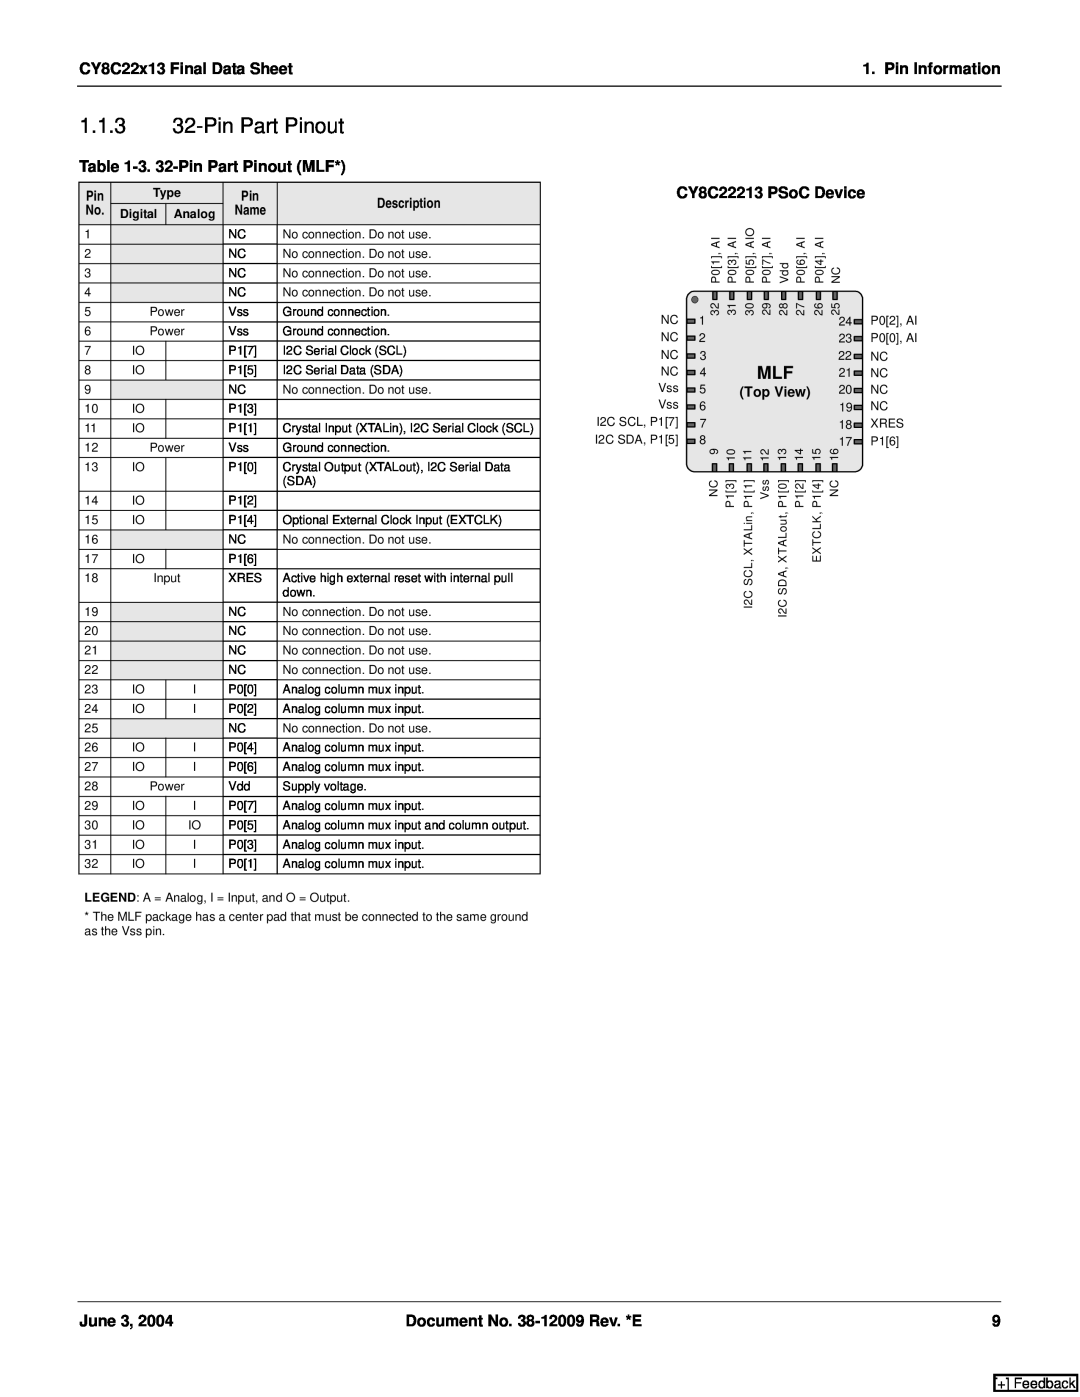 Cypress 1.1.3 32-Pin Part Pinout, 3. 32-Pin Part Pinout MLF, CY8C22213 PSoC Device, CY8C22x13 Final Data Sheet, June 3 